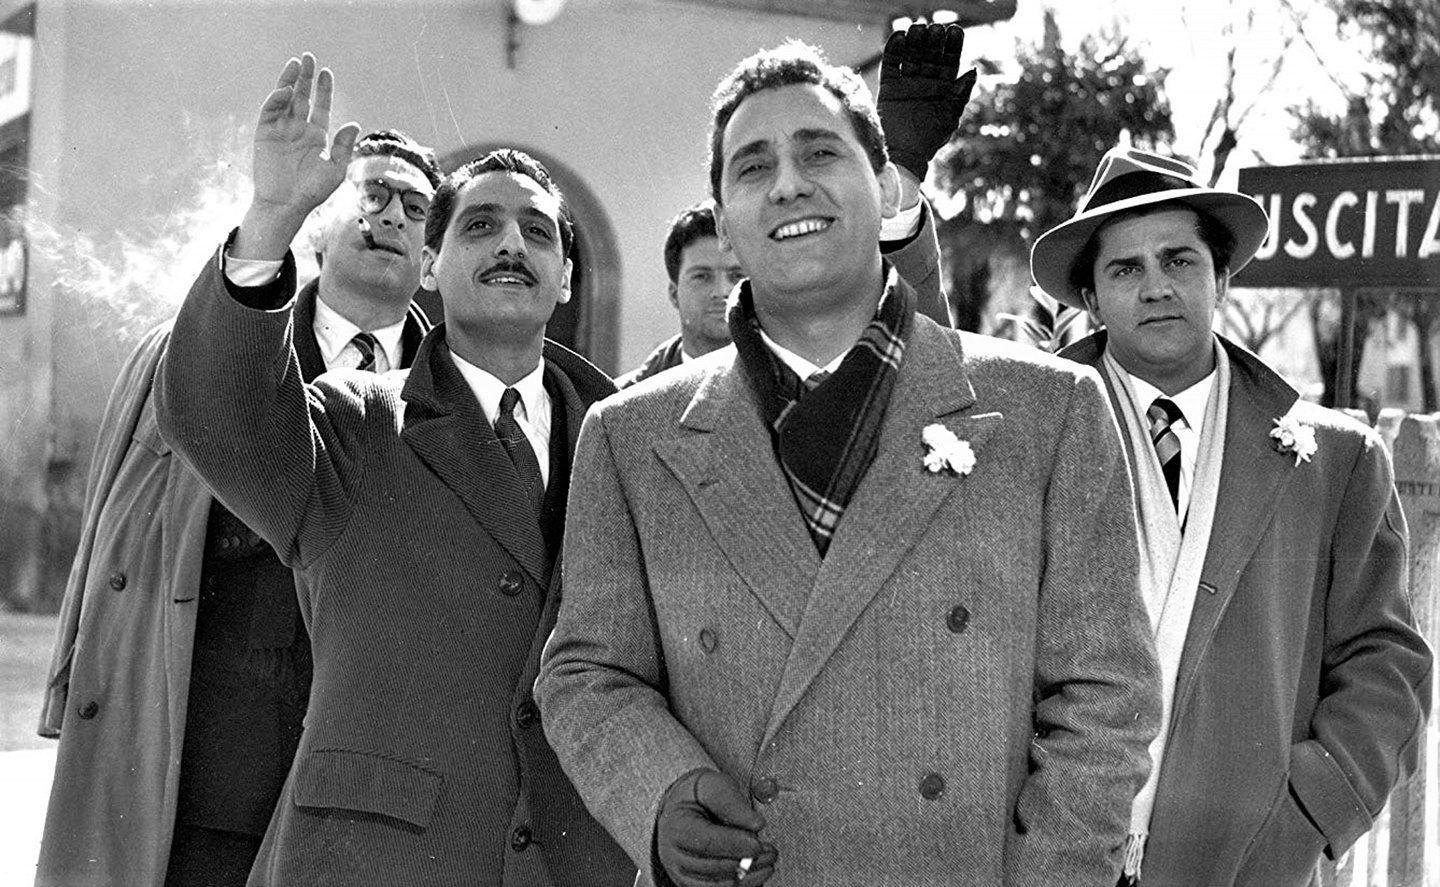 Sabato sera l’omaggio a Fellini con “I Vitelloni”